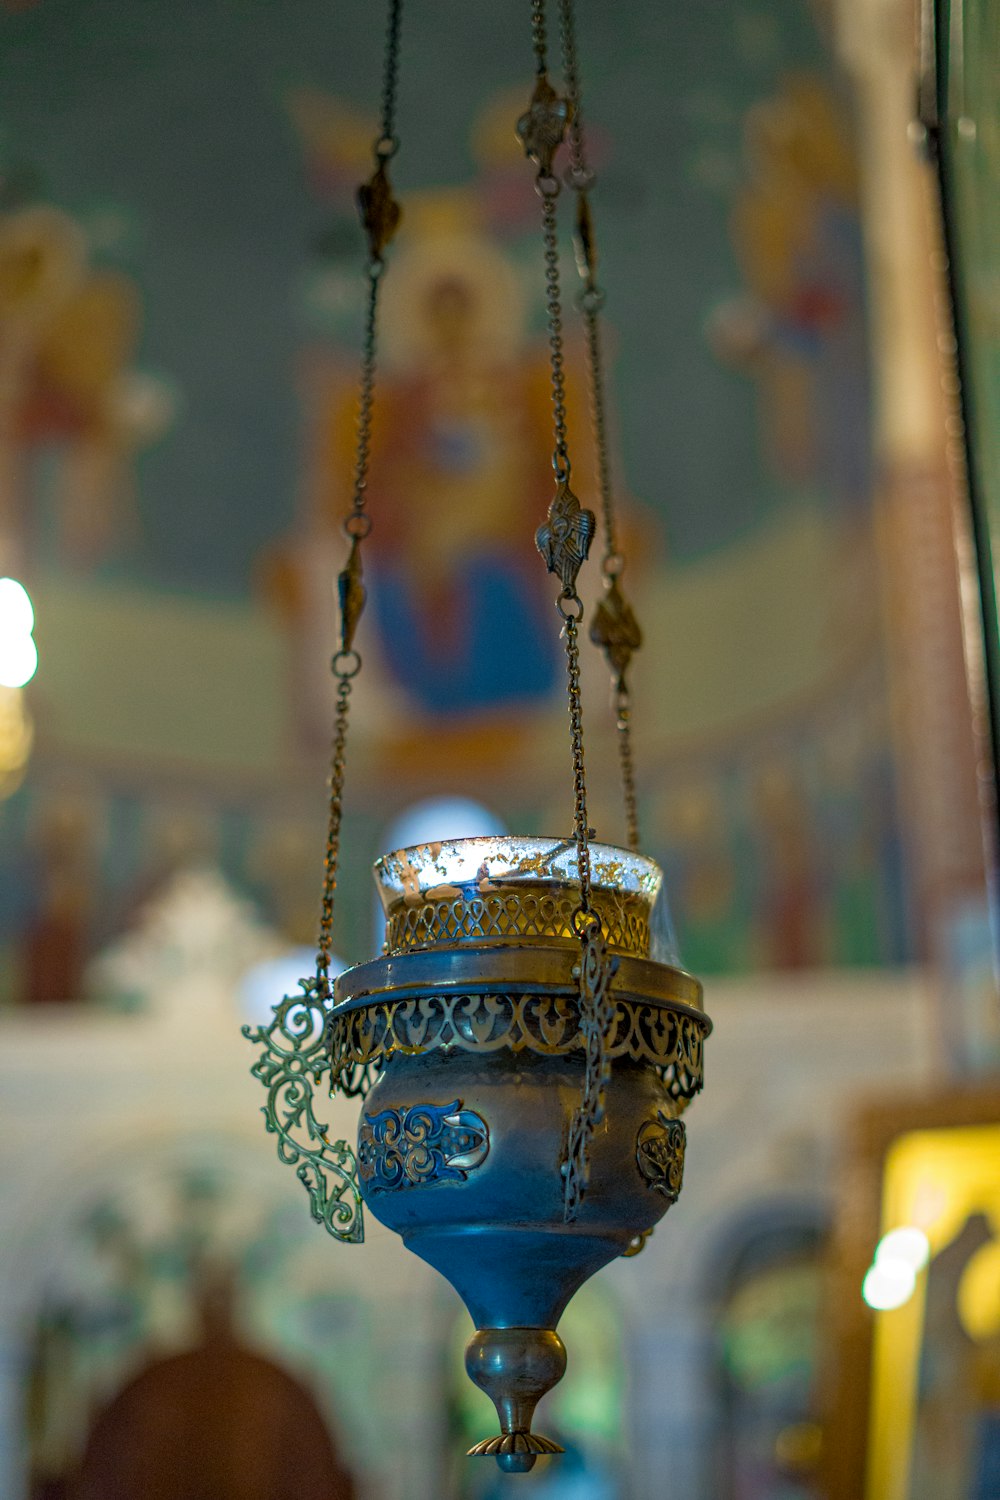 un vase bleu suspendu à une chaîne dans une église